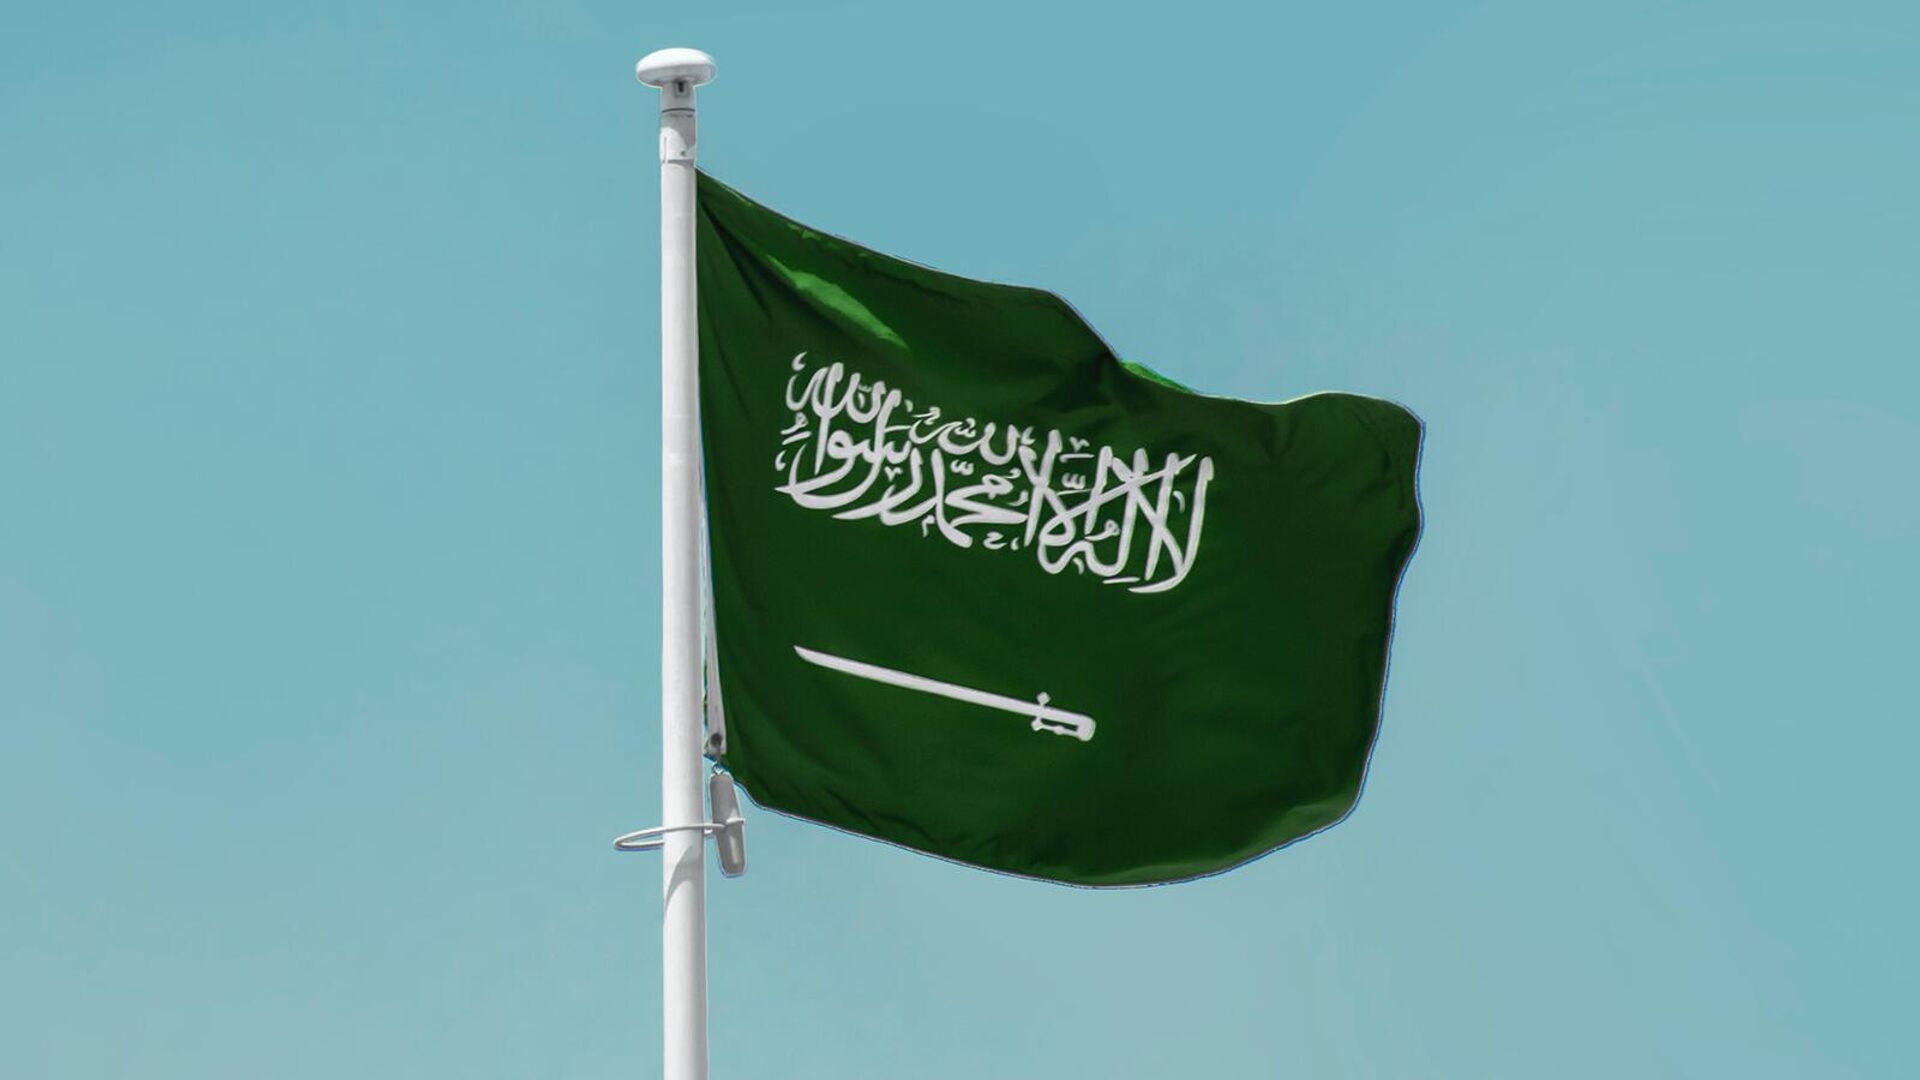 Սաուդյան Արաբիայի Թագավորության արտաքին գործերի նախարարությունը ողջունել է Պաղեստին պետությունը ճանաչելու ՀՀ-ի որոշումը